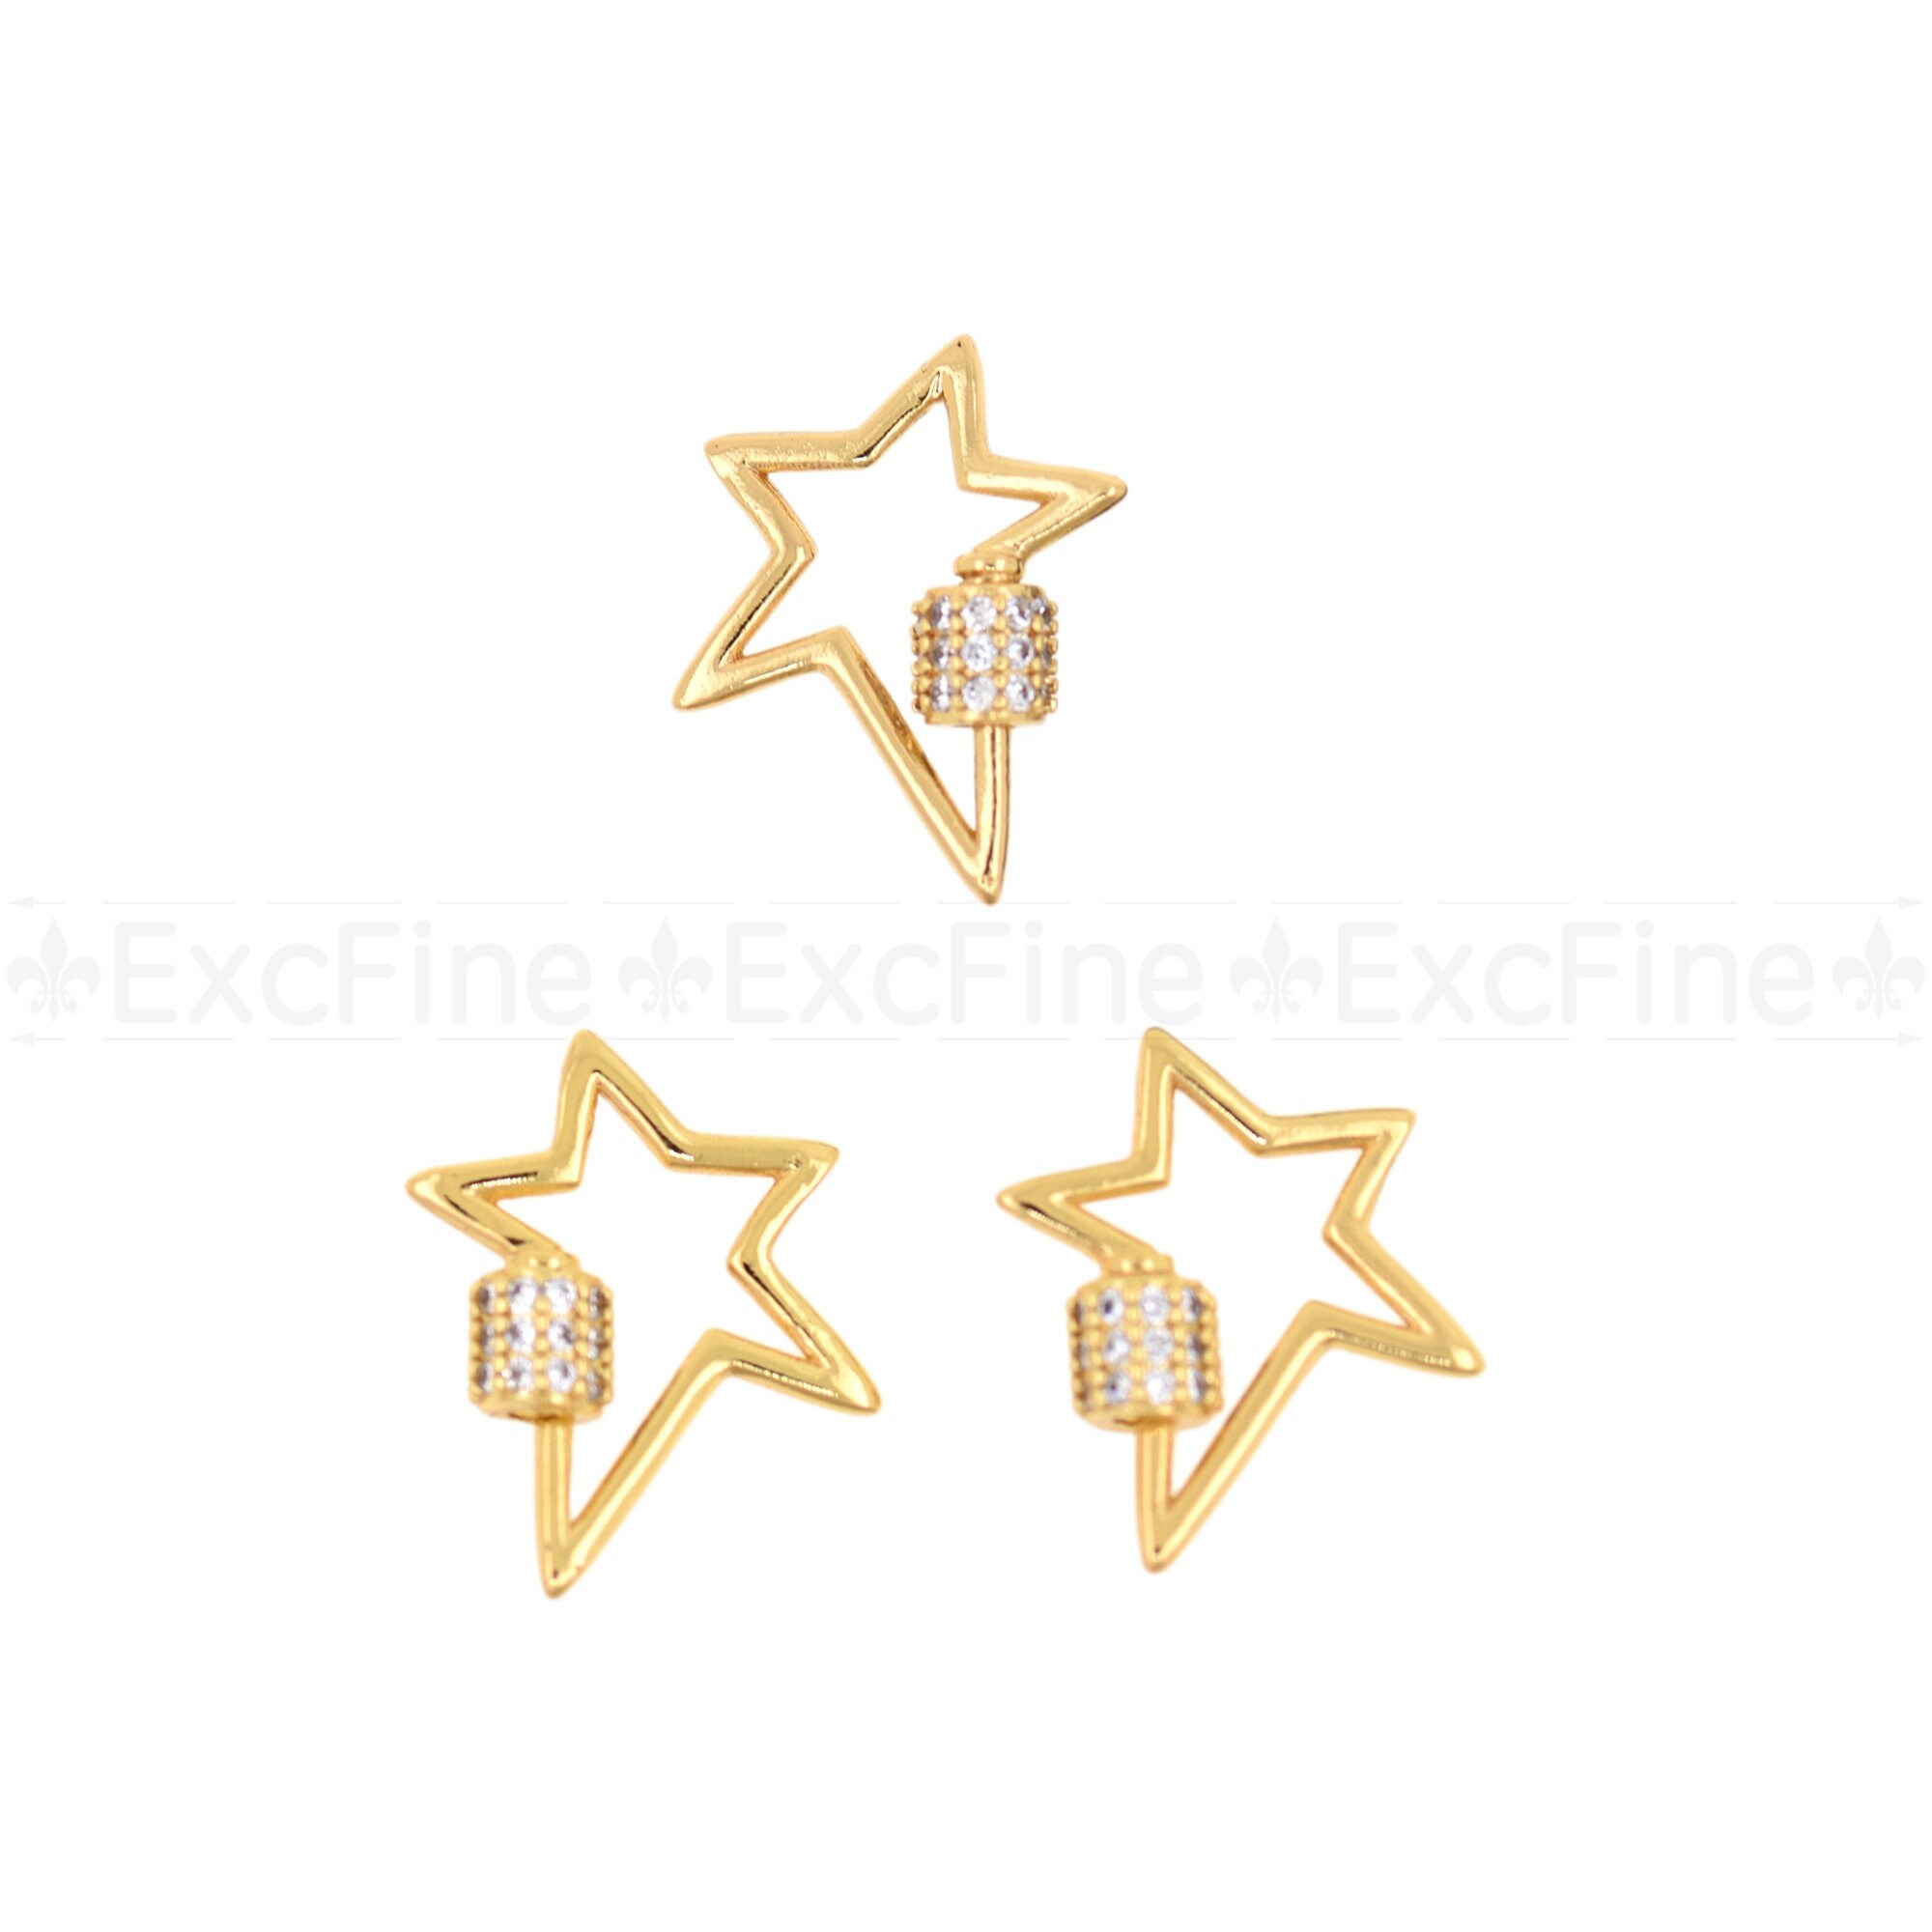 Star Carabiner Pendant - Jewelry Carabiner - 18K Carabiner Pendants 18K Gold - 4pcs/pk